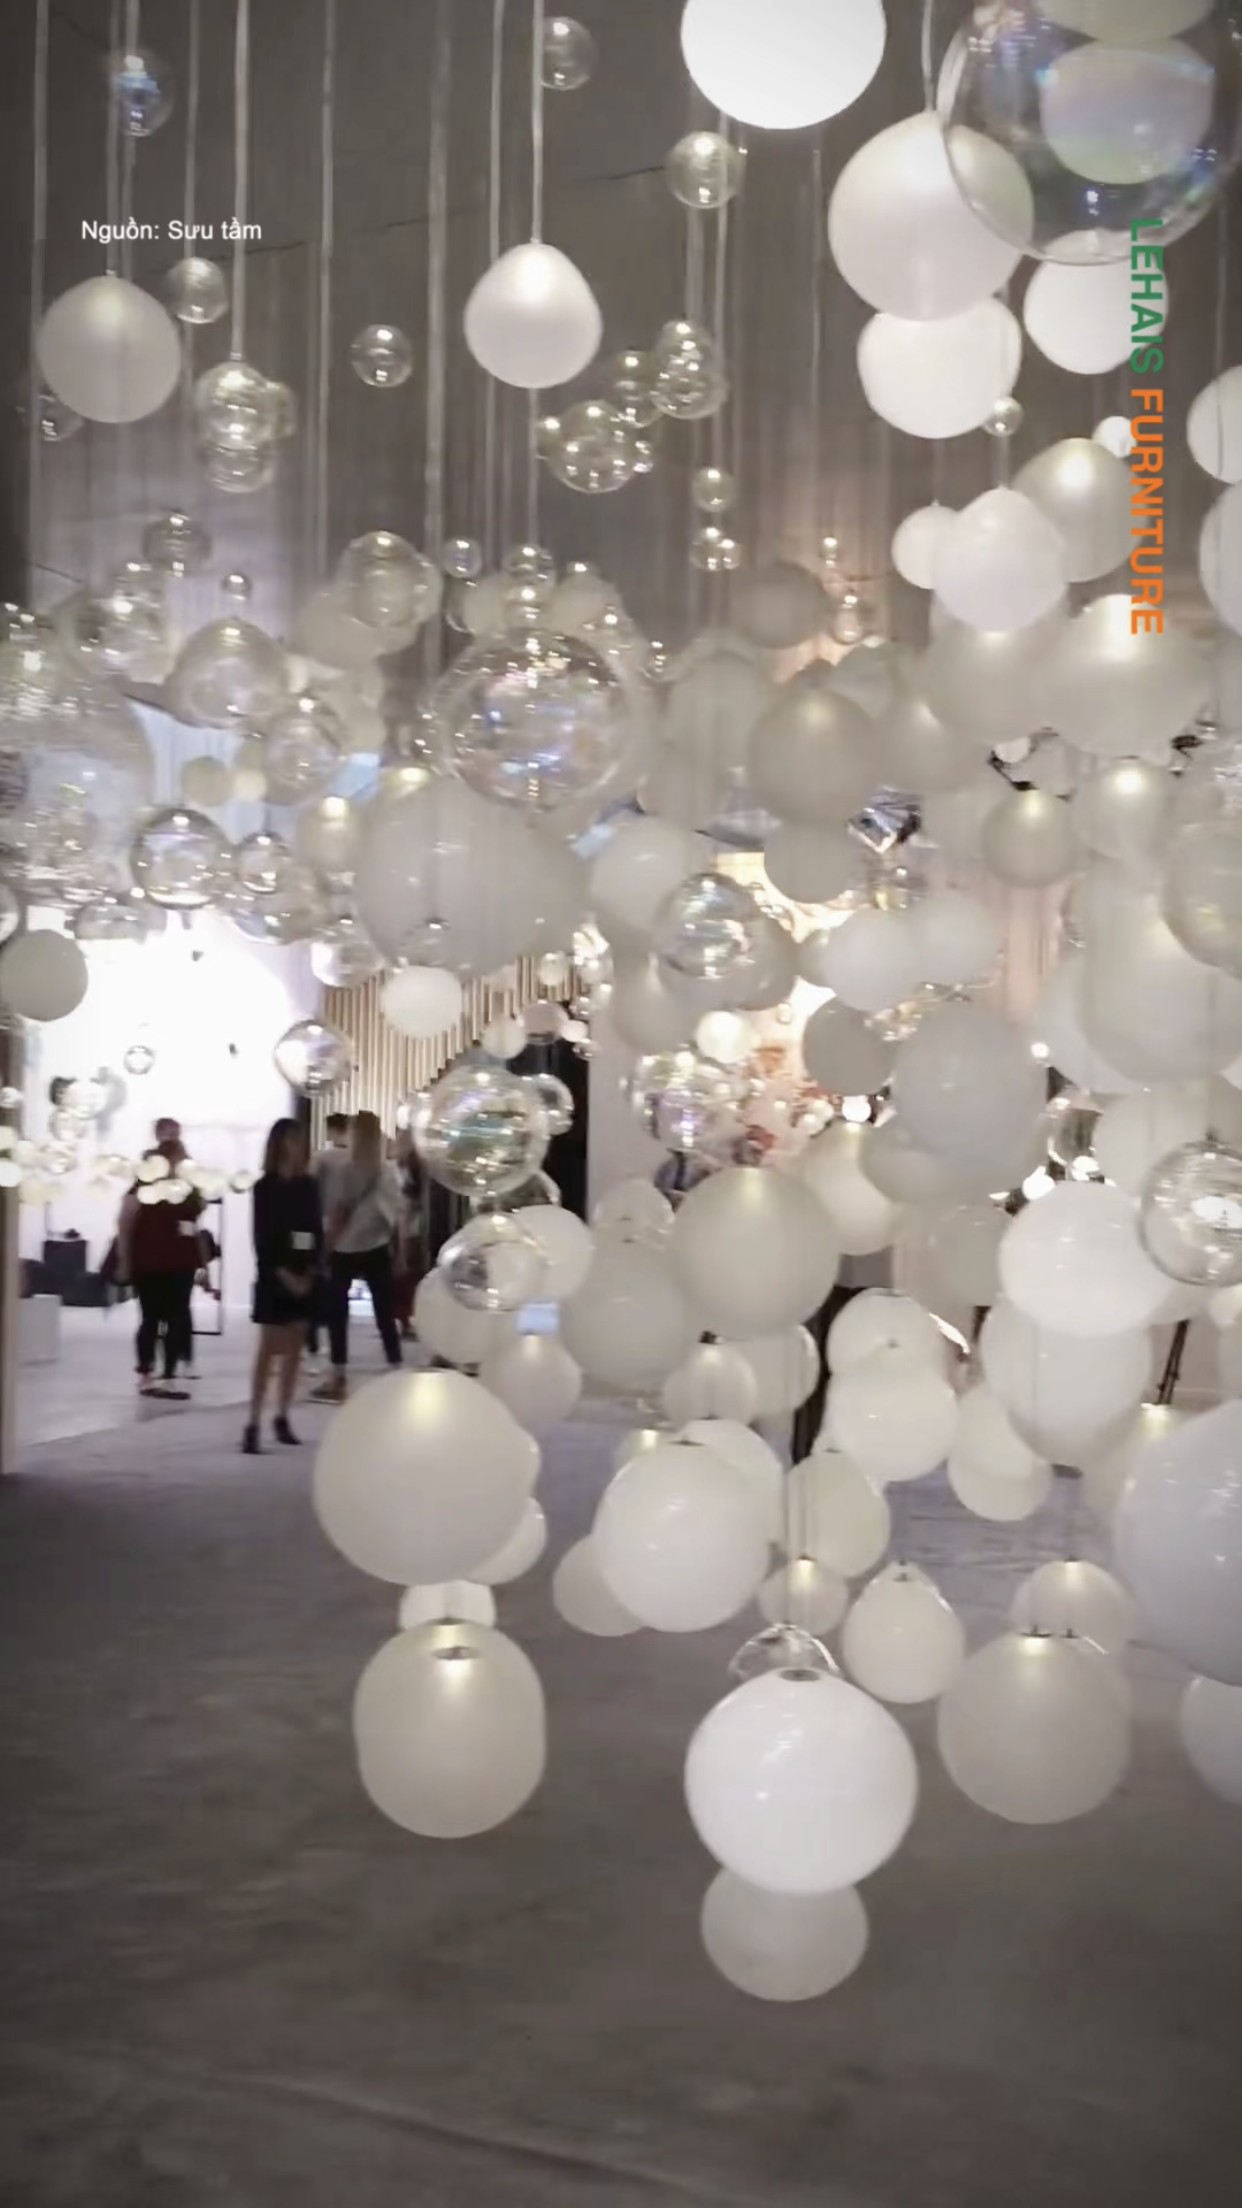 Trang trí nội thất bằng hàng trăm chiếc đèn hình quả cầu